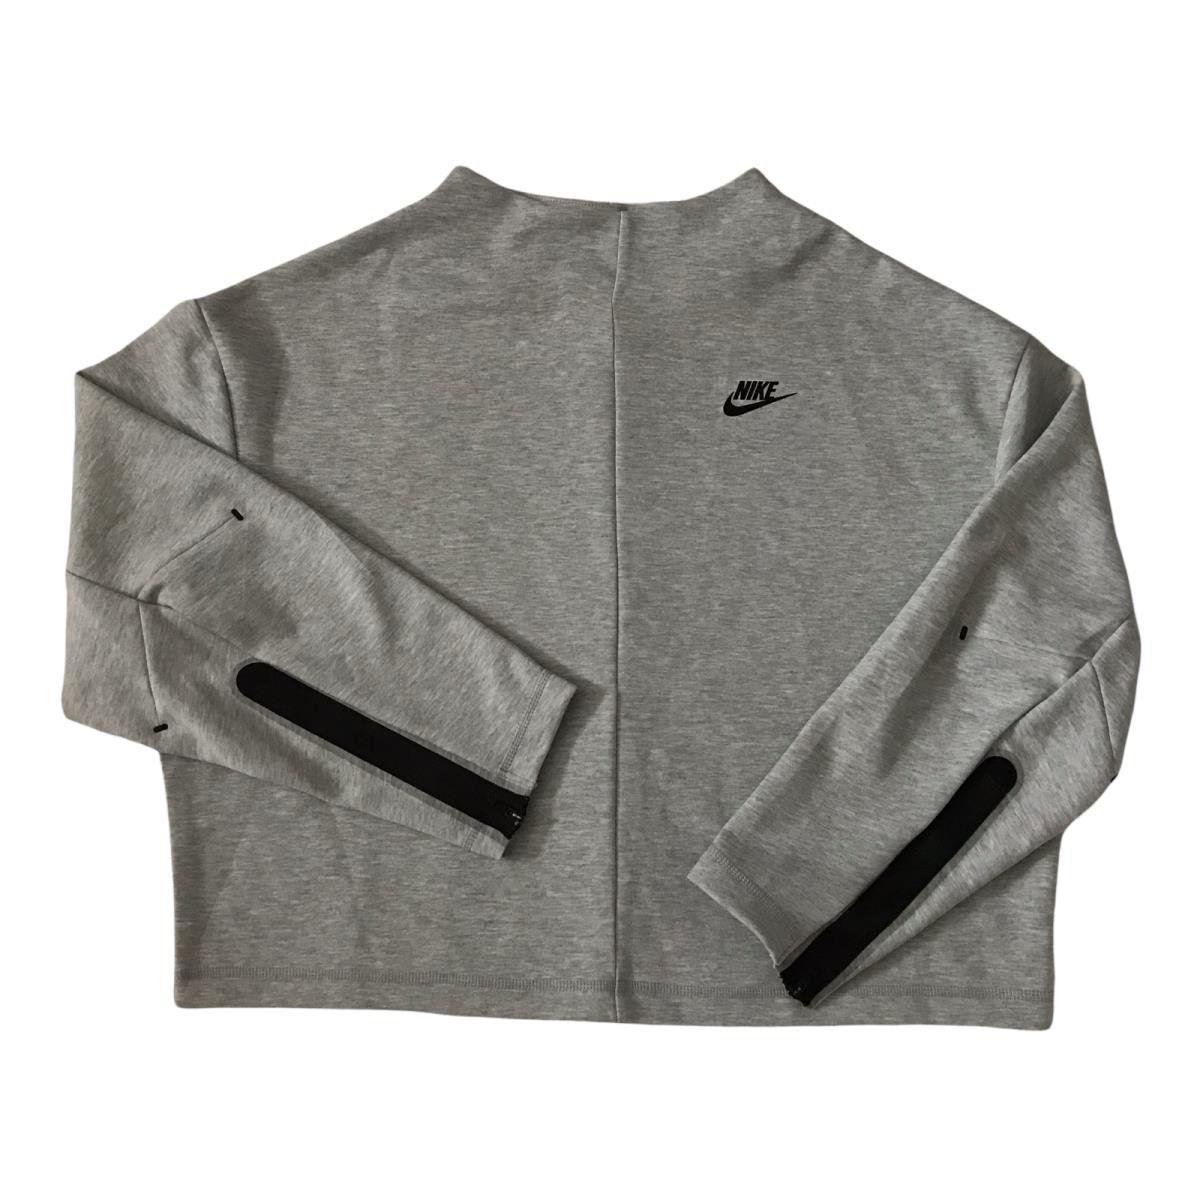 Nike Sportswear Tech Fleece Pullover Crew Neck Women s SZ M Gray CZ8916-063